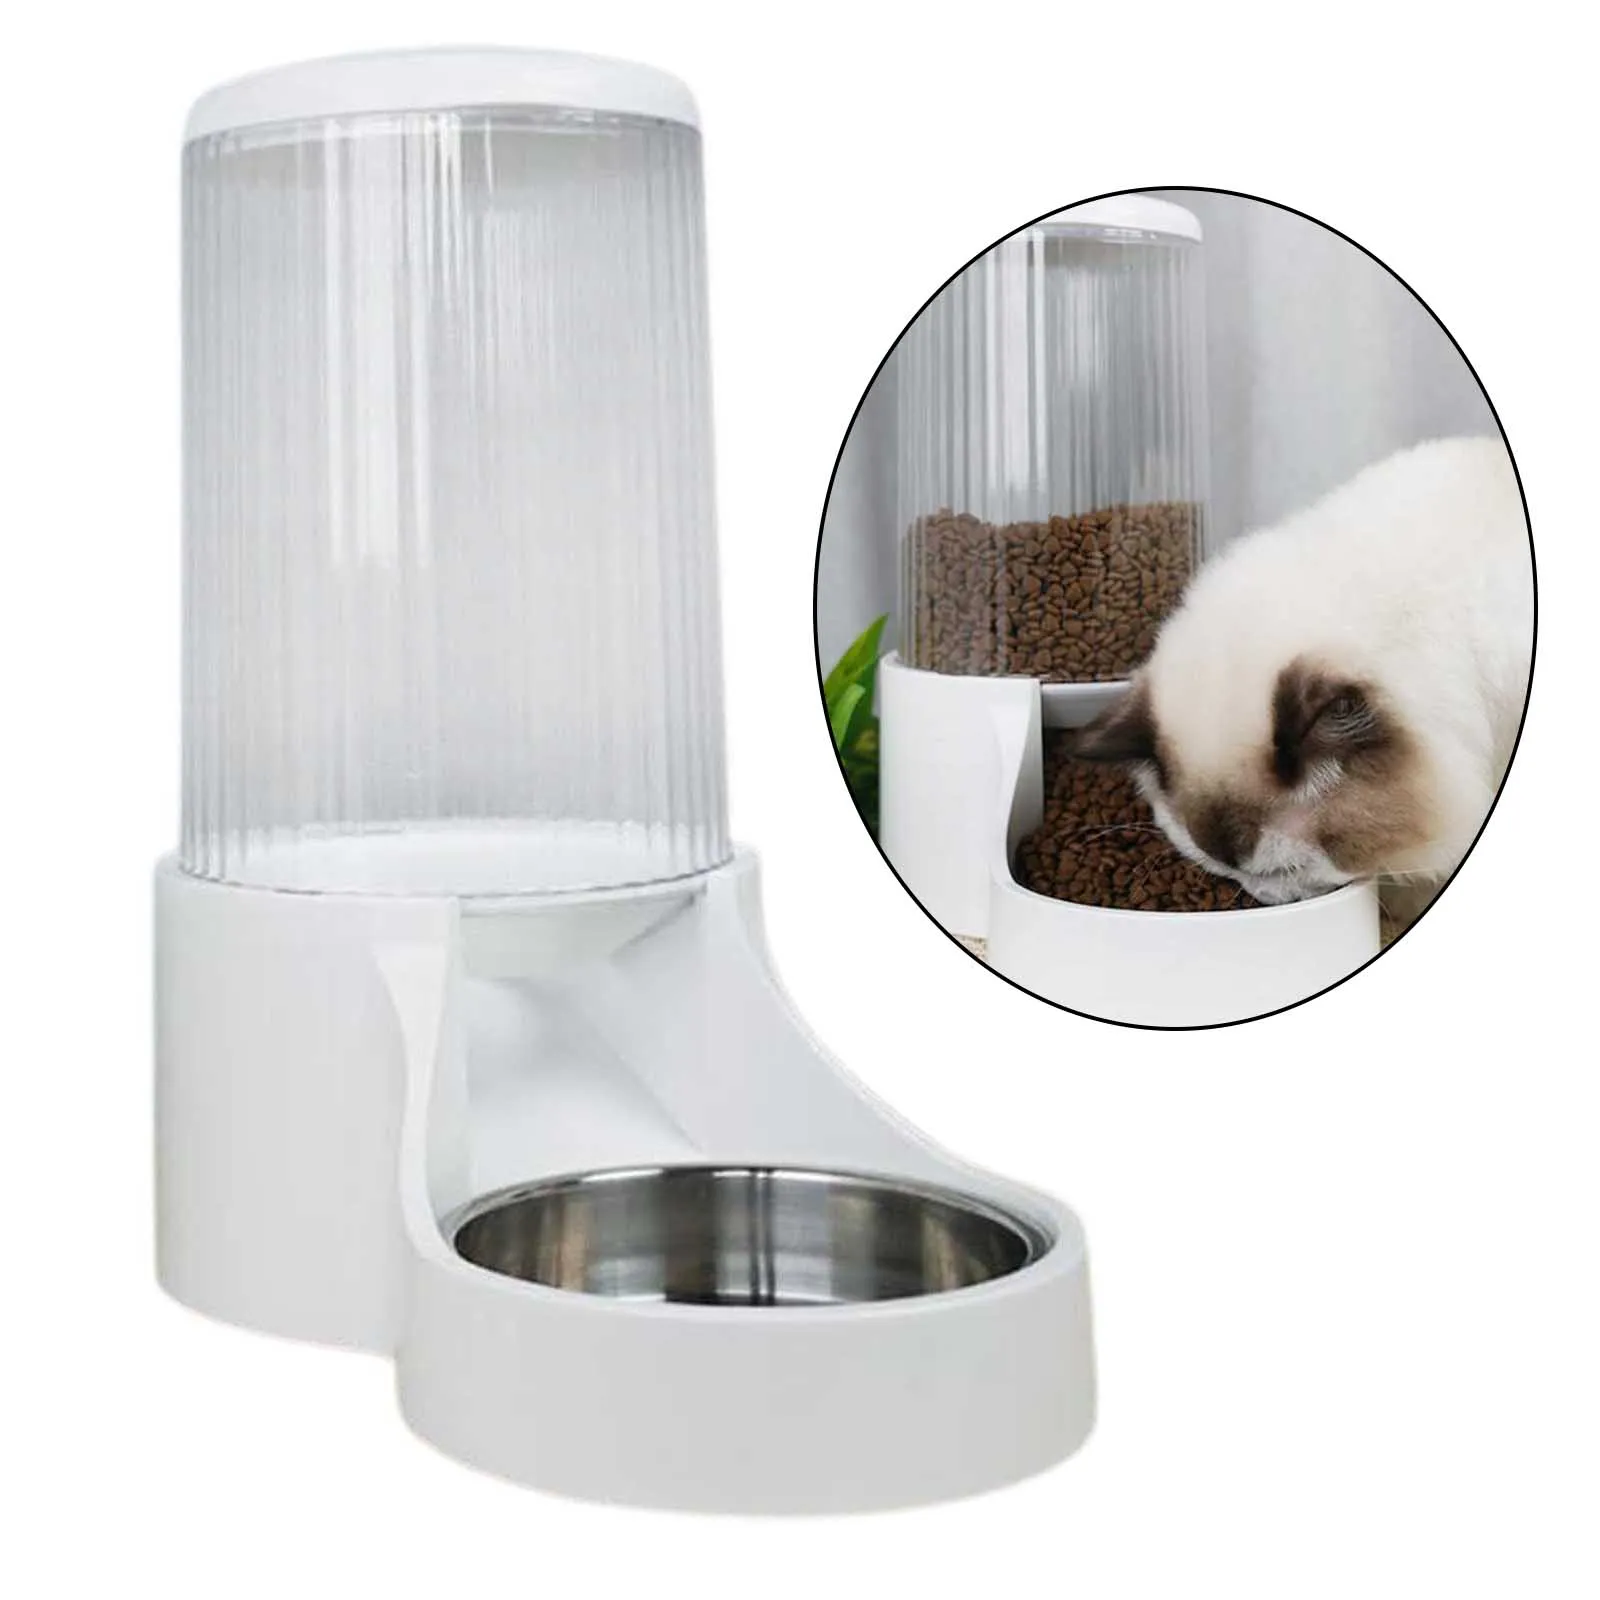 

Автоматическая миска-Кормушка для собак и кошек, емкость с питьевой водой 2,7 л, емкость для медленного кормления котят, дозатор воды